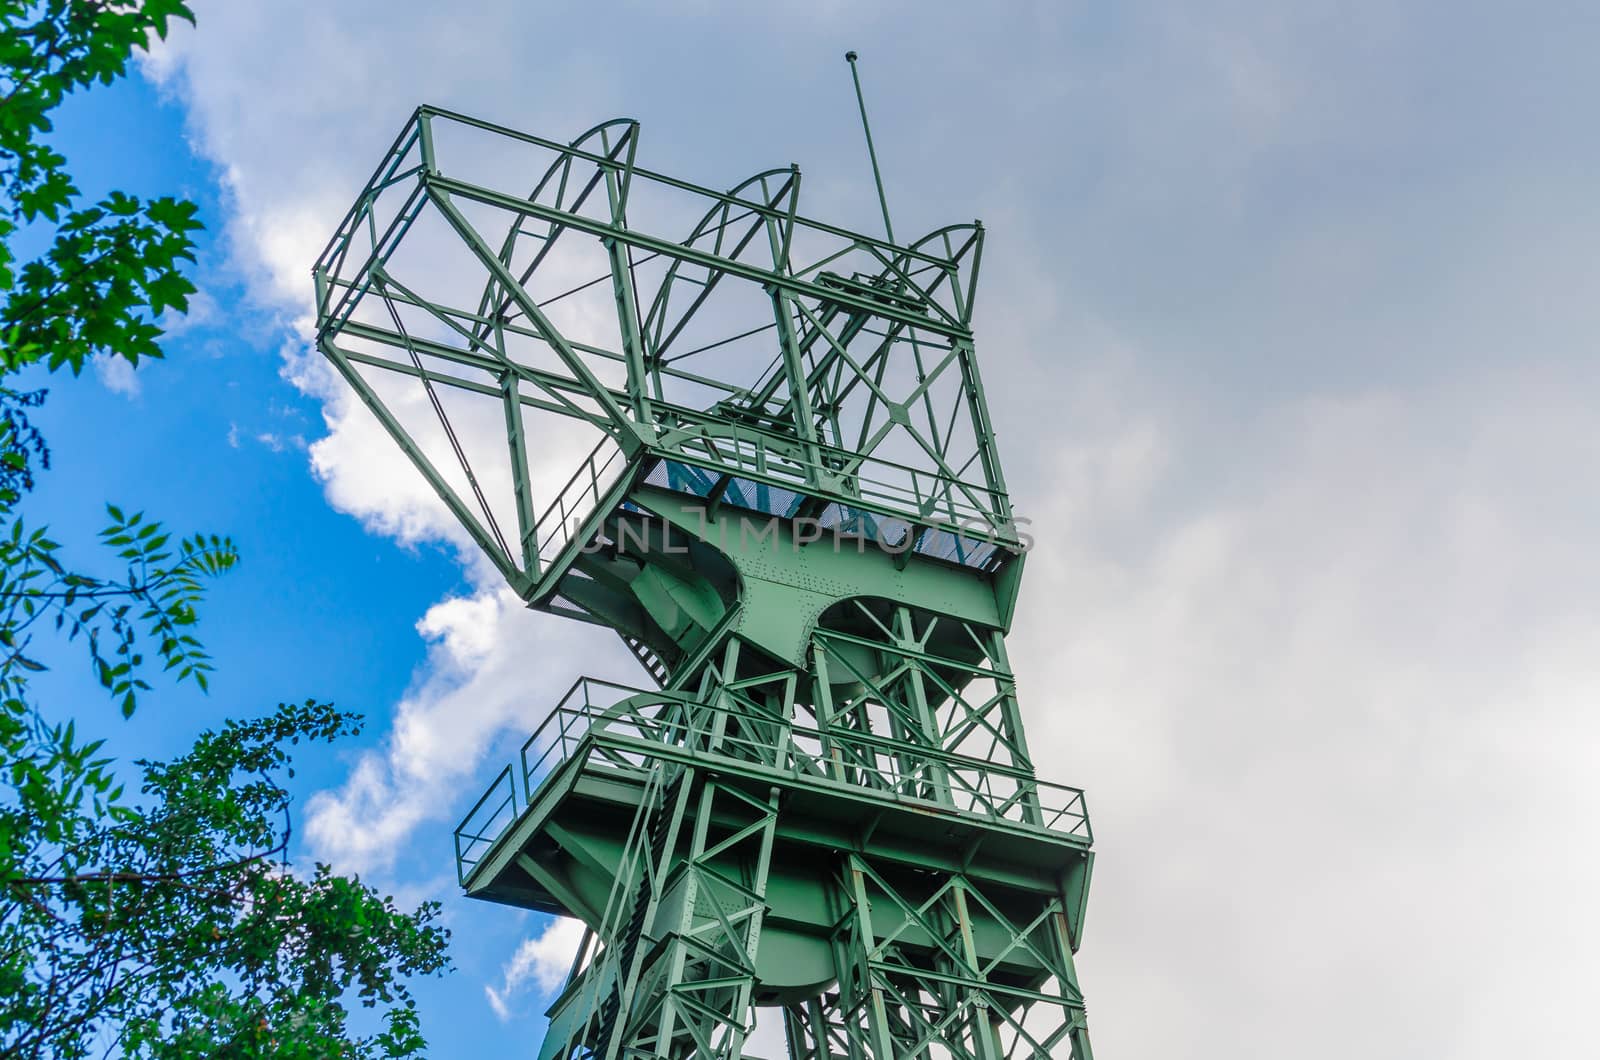 Mines tower Zeche Carl Funke city of Essen by JFsPic